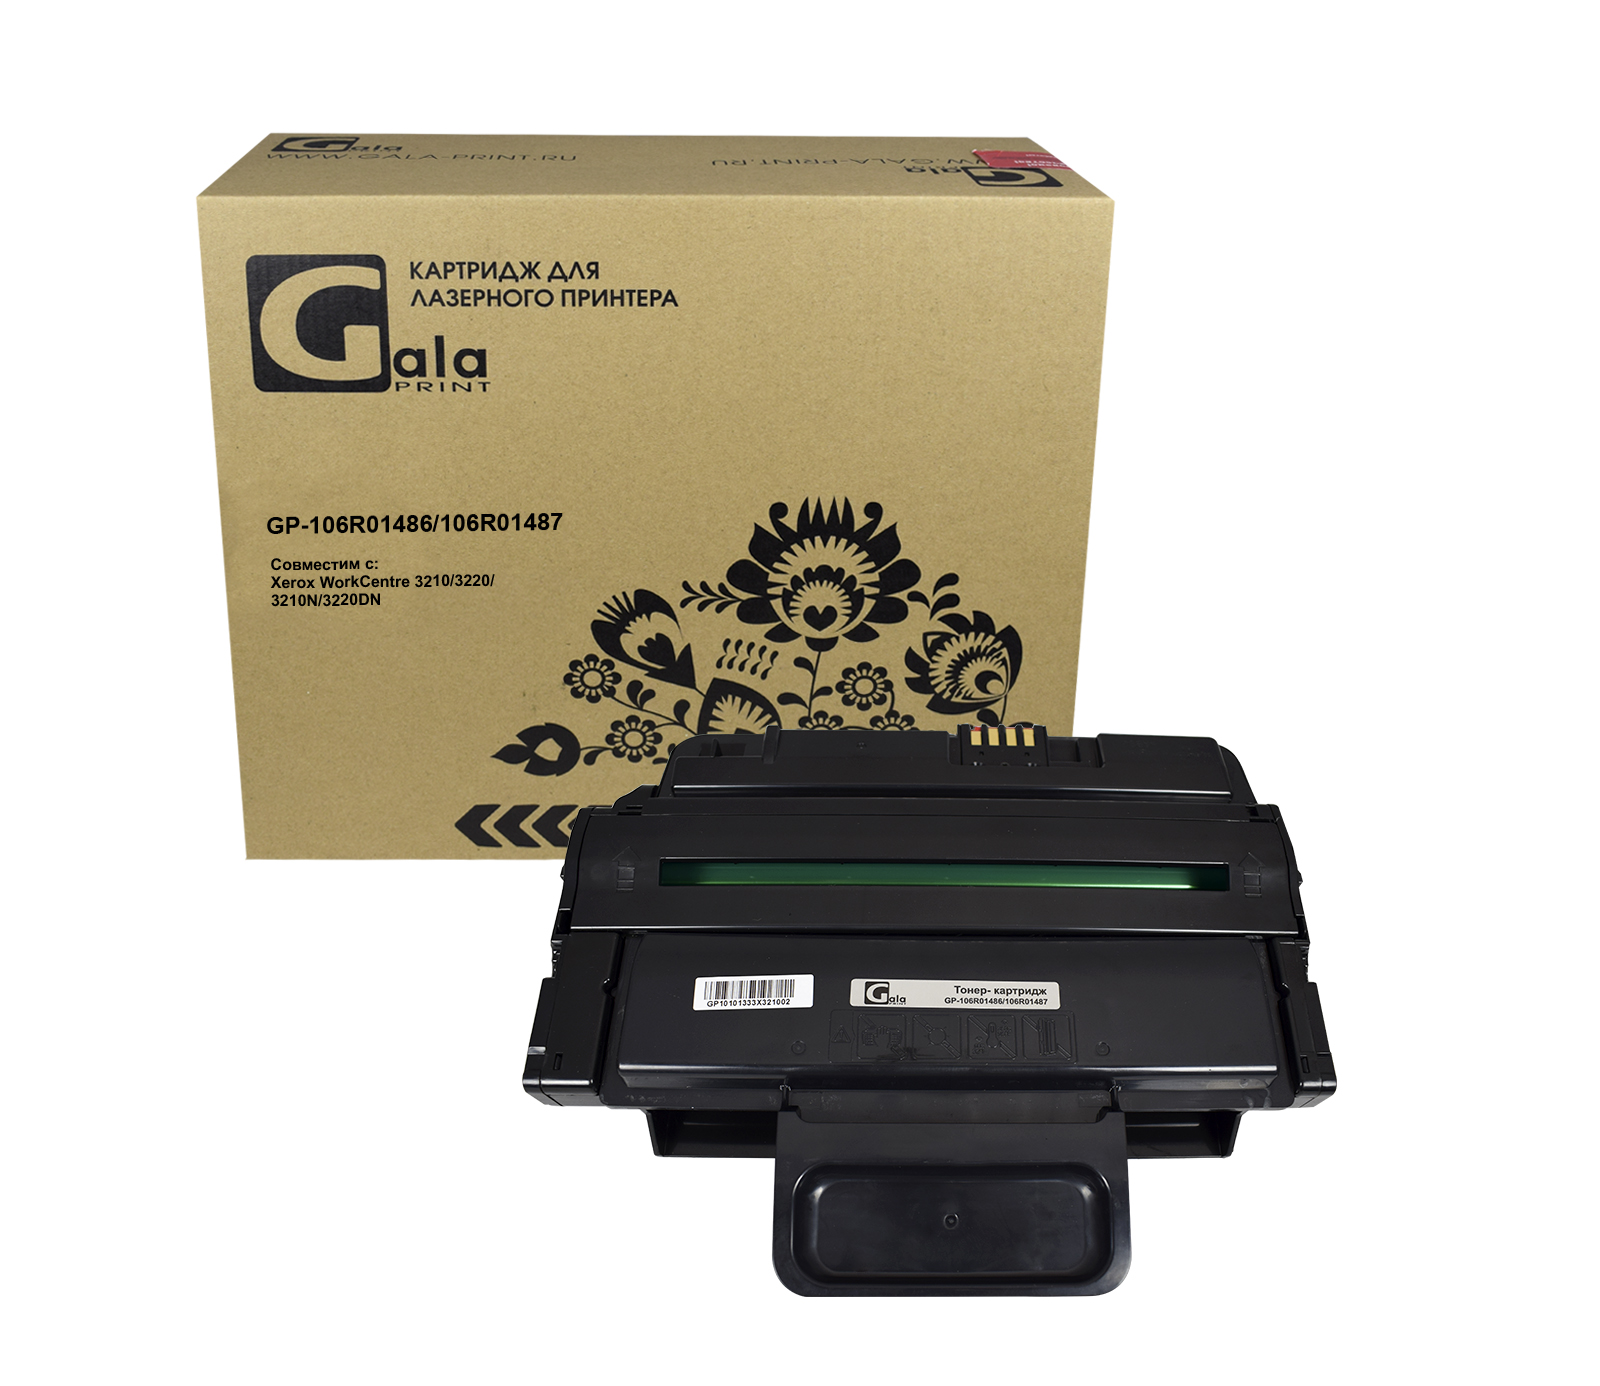 Картридж GP-106R01487 для принтеров Rank Xerox WC 3210/3210N/3220DN 4100 копий GalaPrint